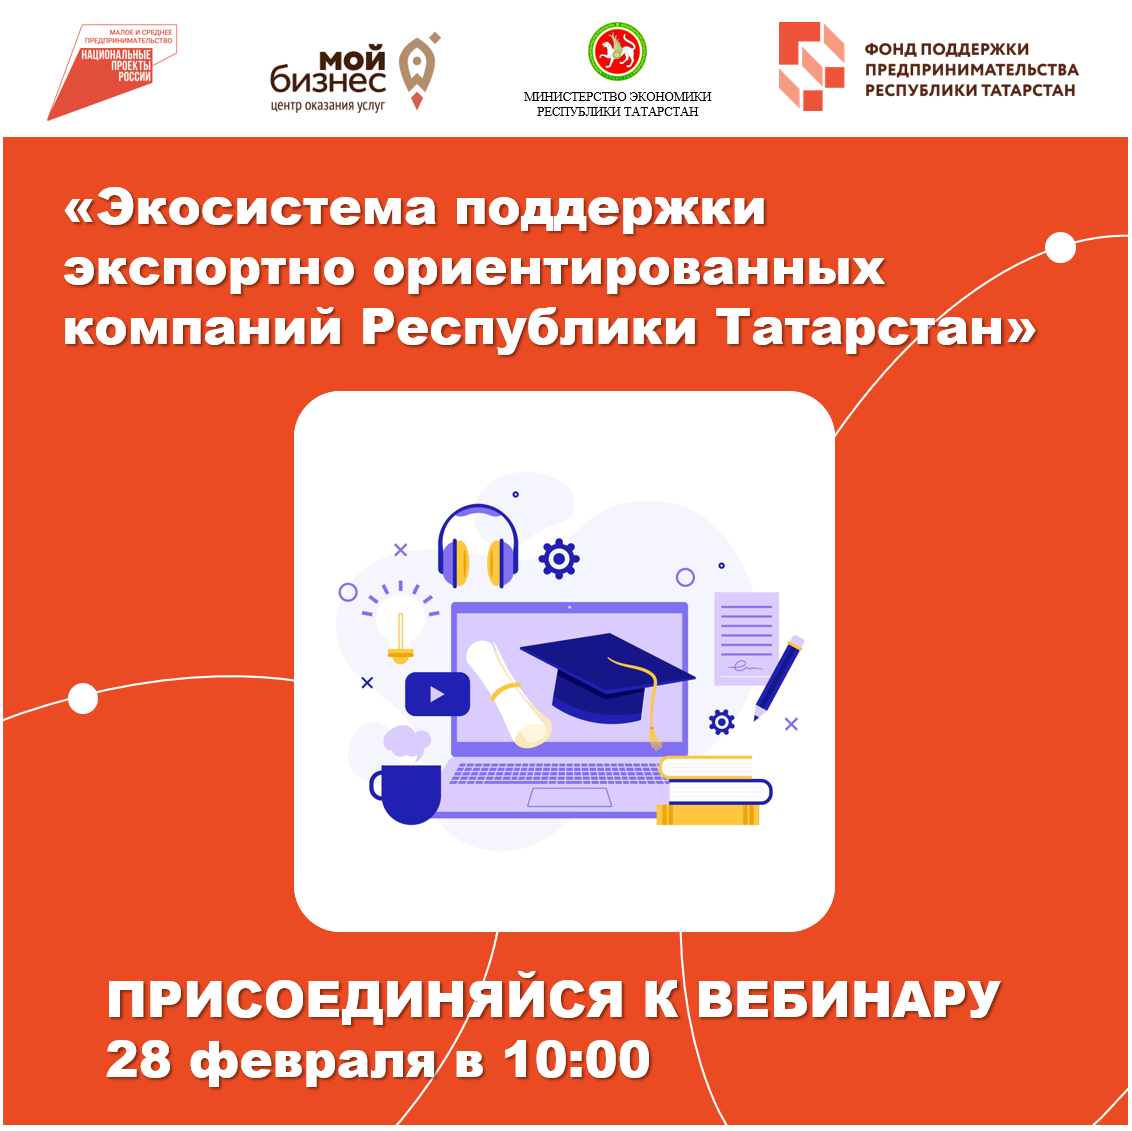 «Экосистема поддержки экспортно ориентированных компаний Республики Татарстан» — онлайн-вебинар для субъектов малого и среднего предпринимательства